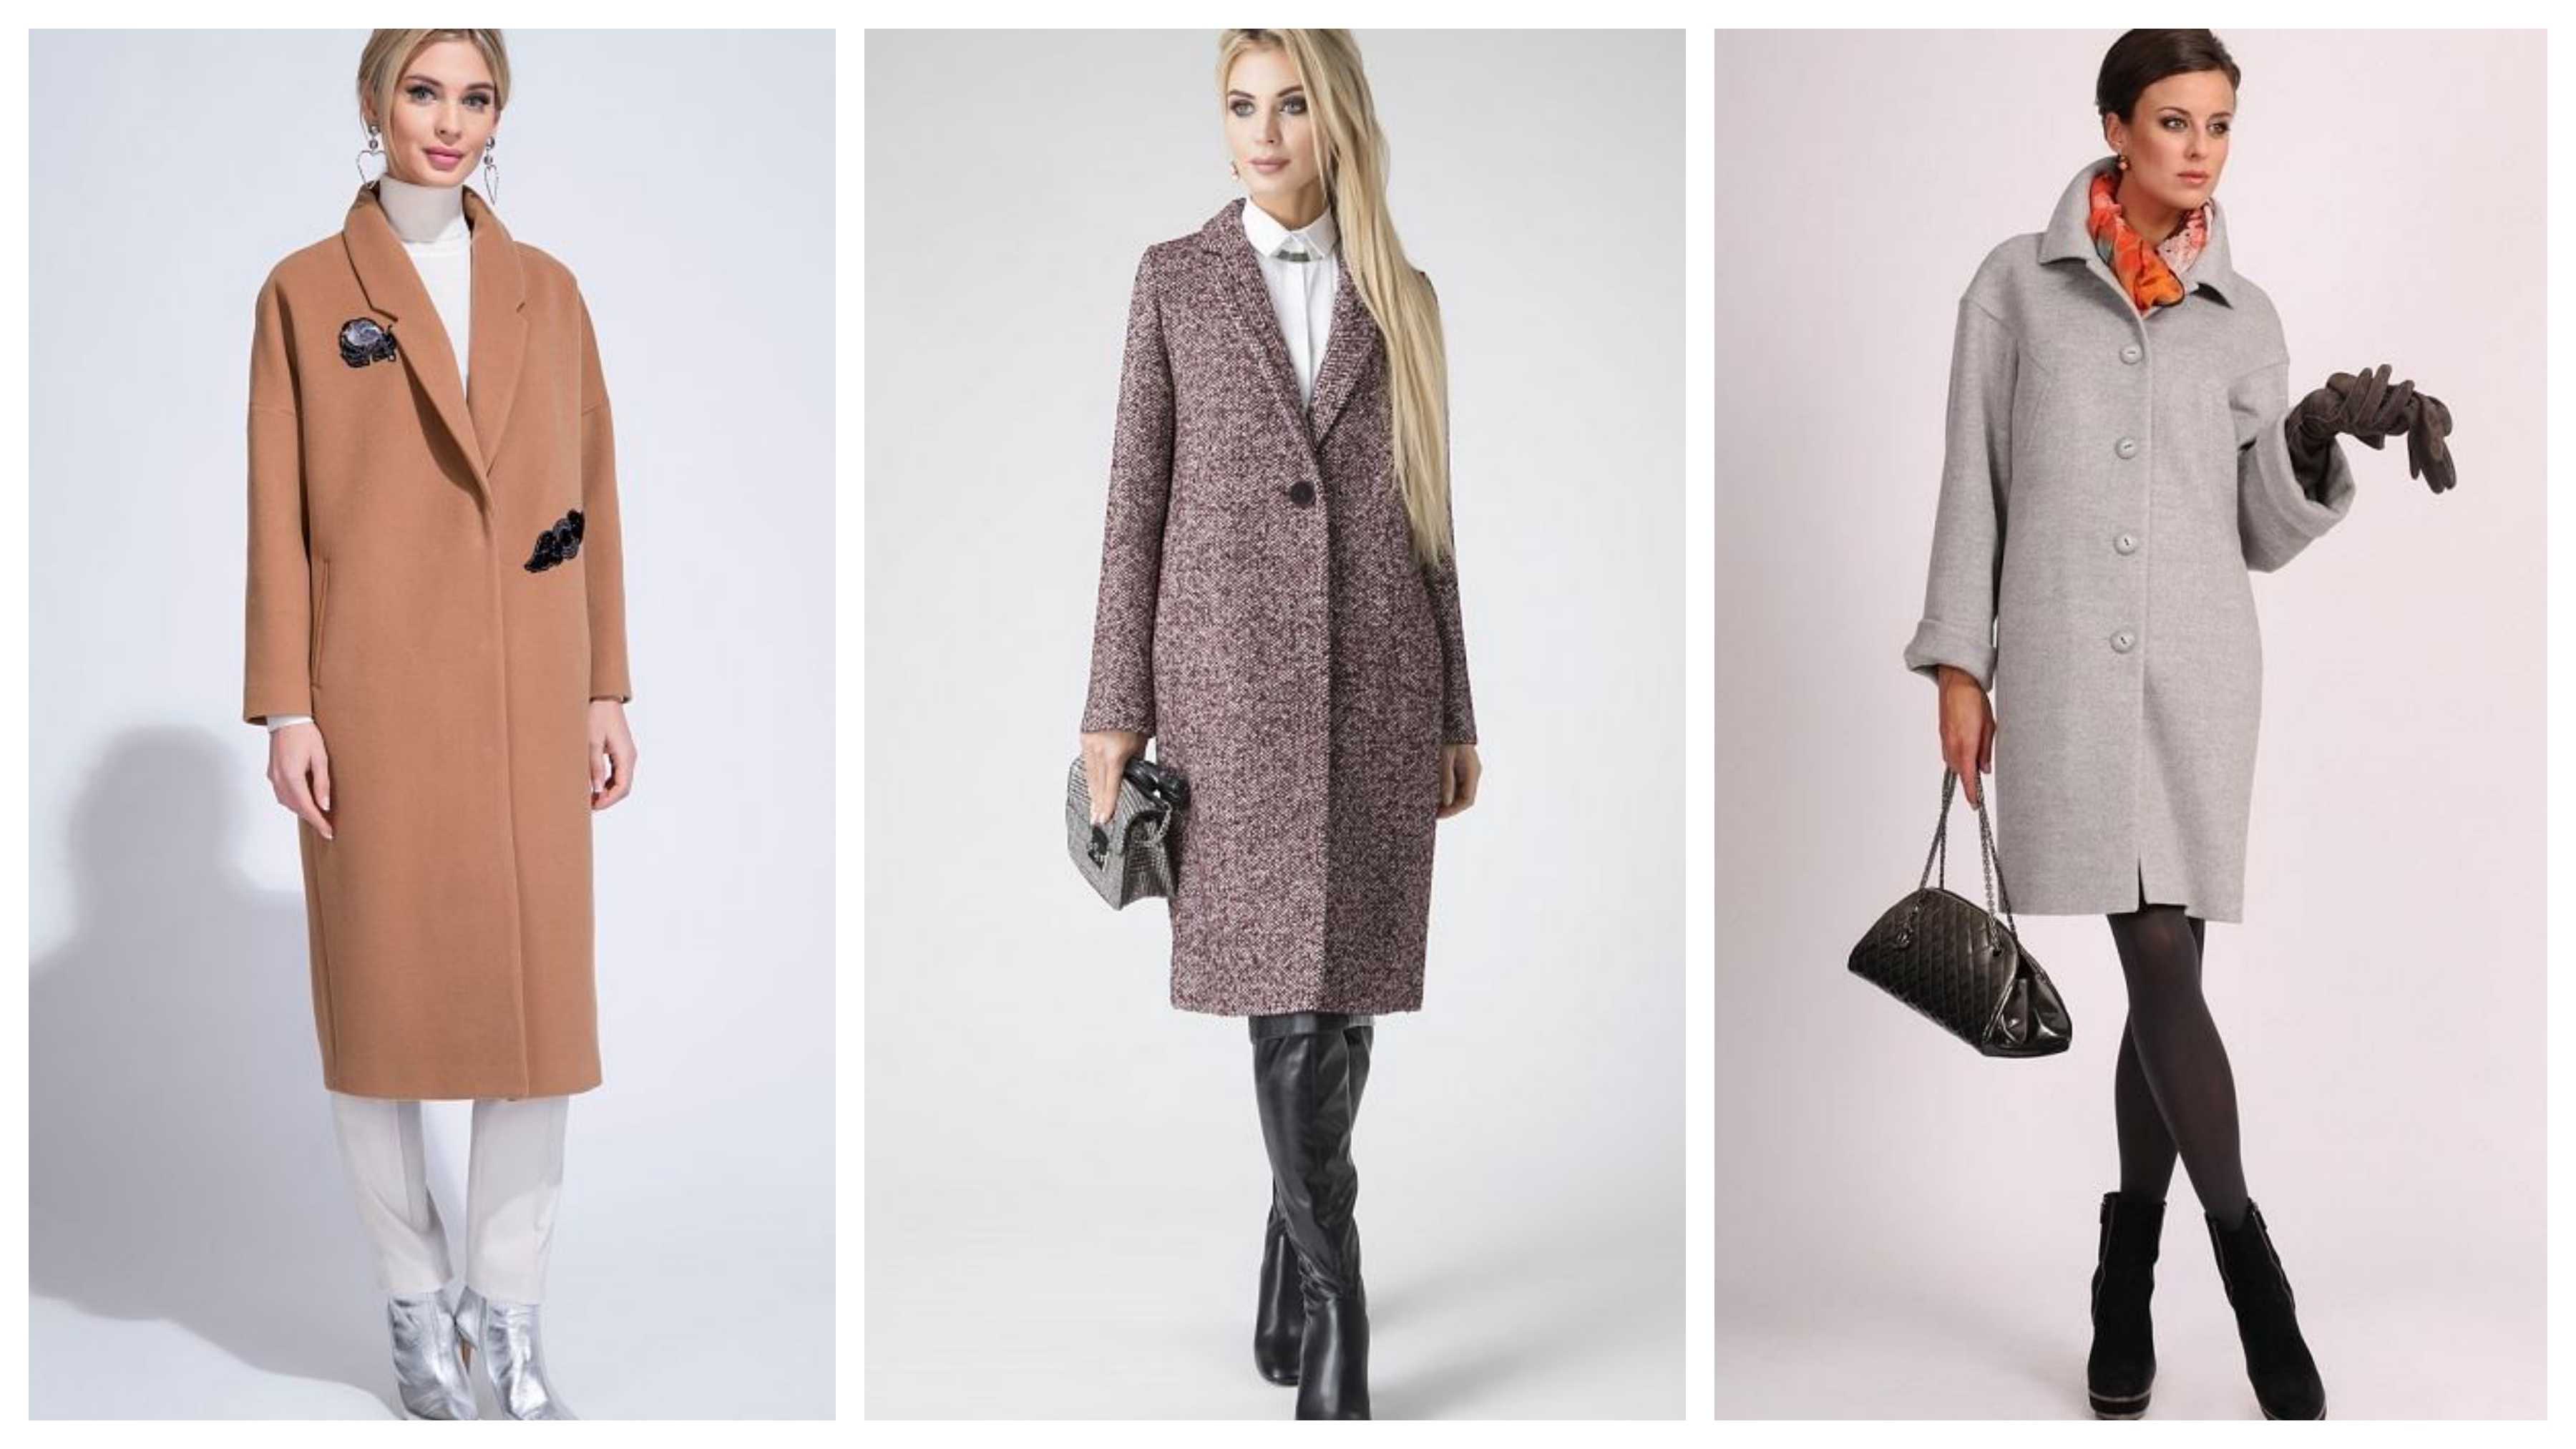 Женское драповое пальто (фото): стильные модели 2018-2019